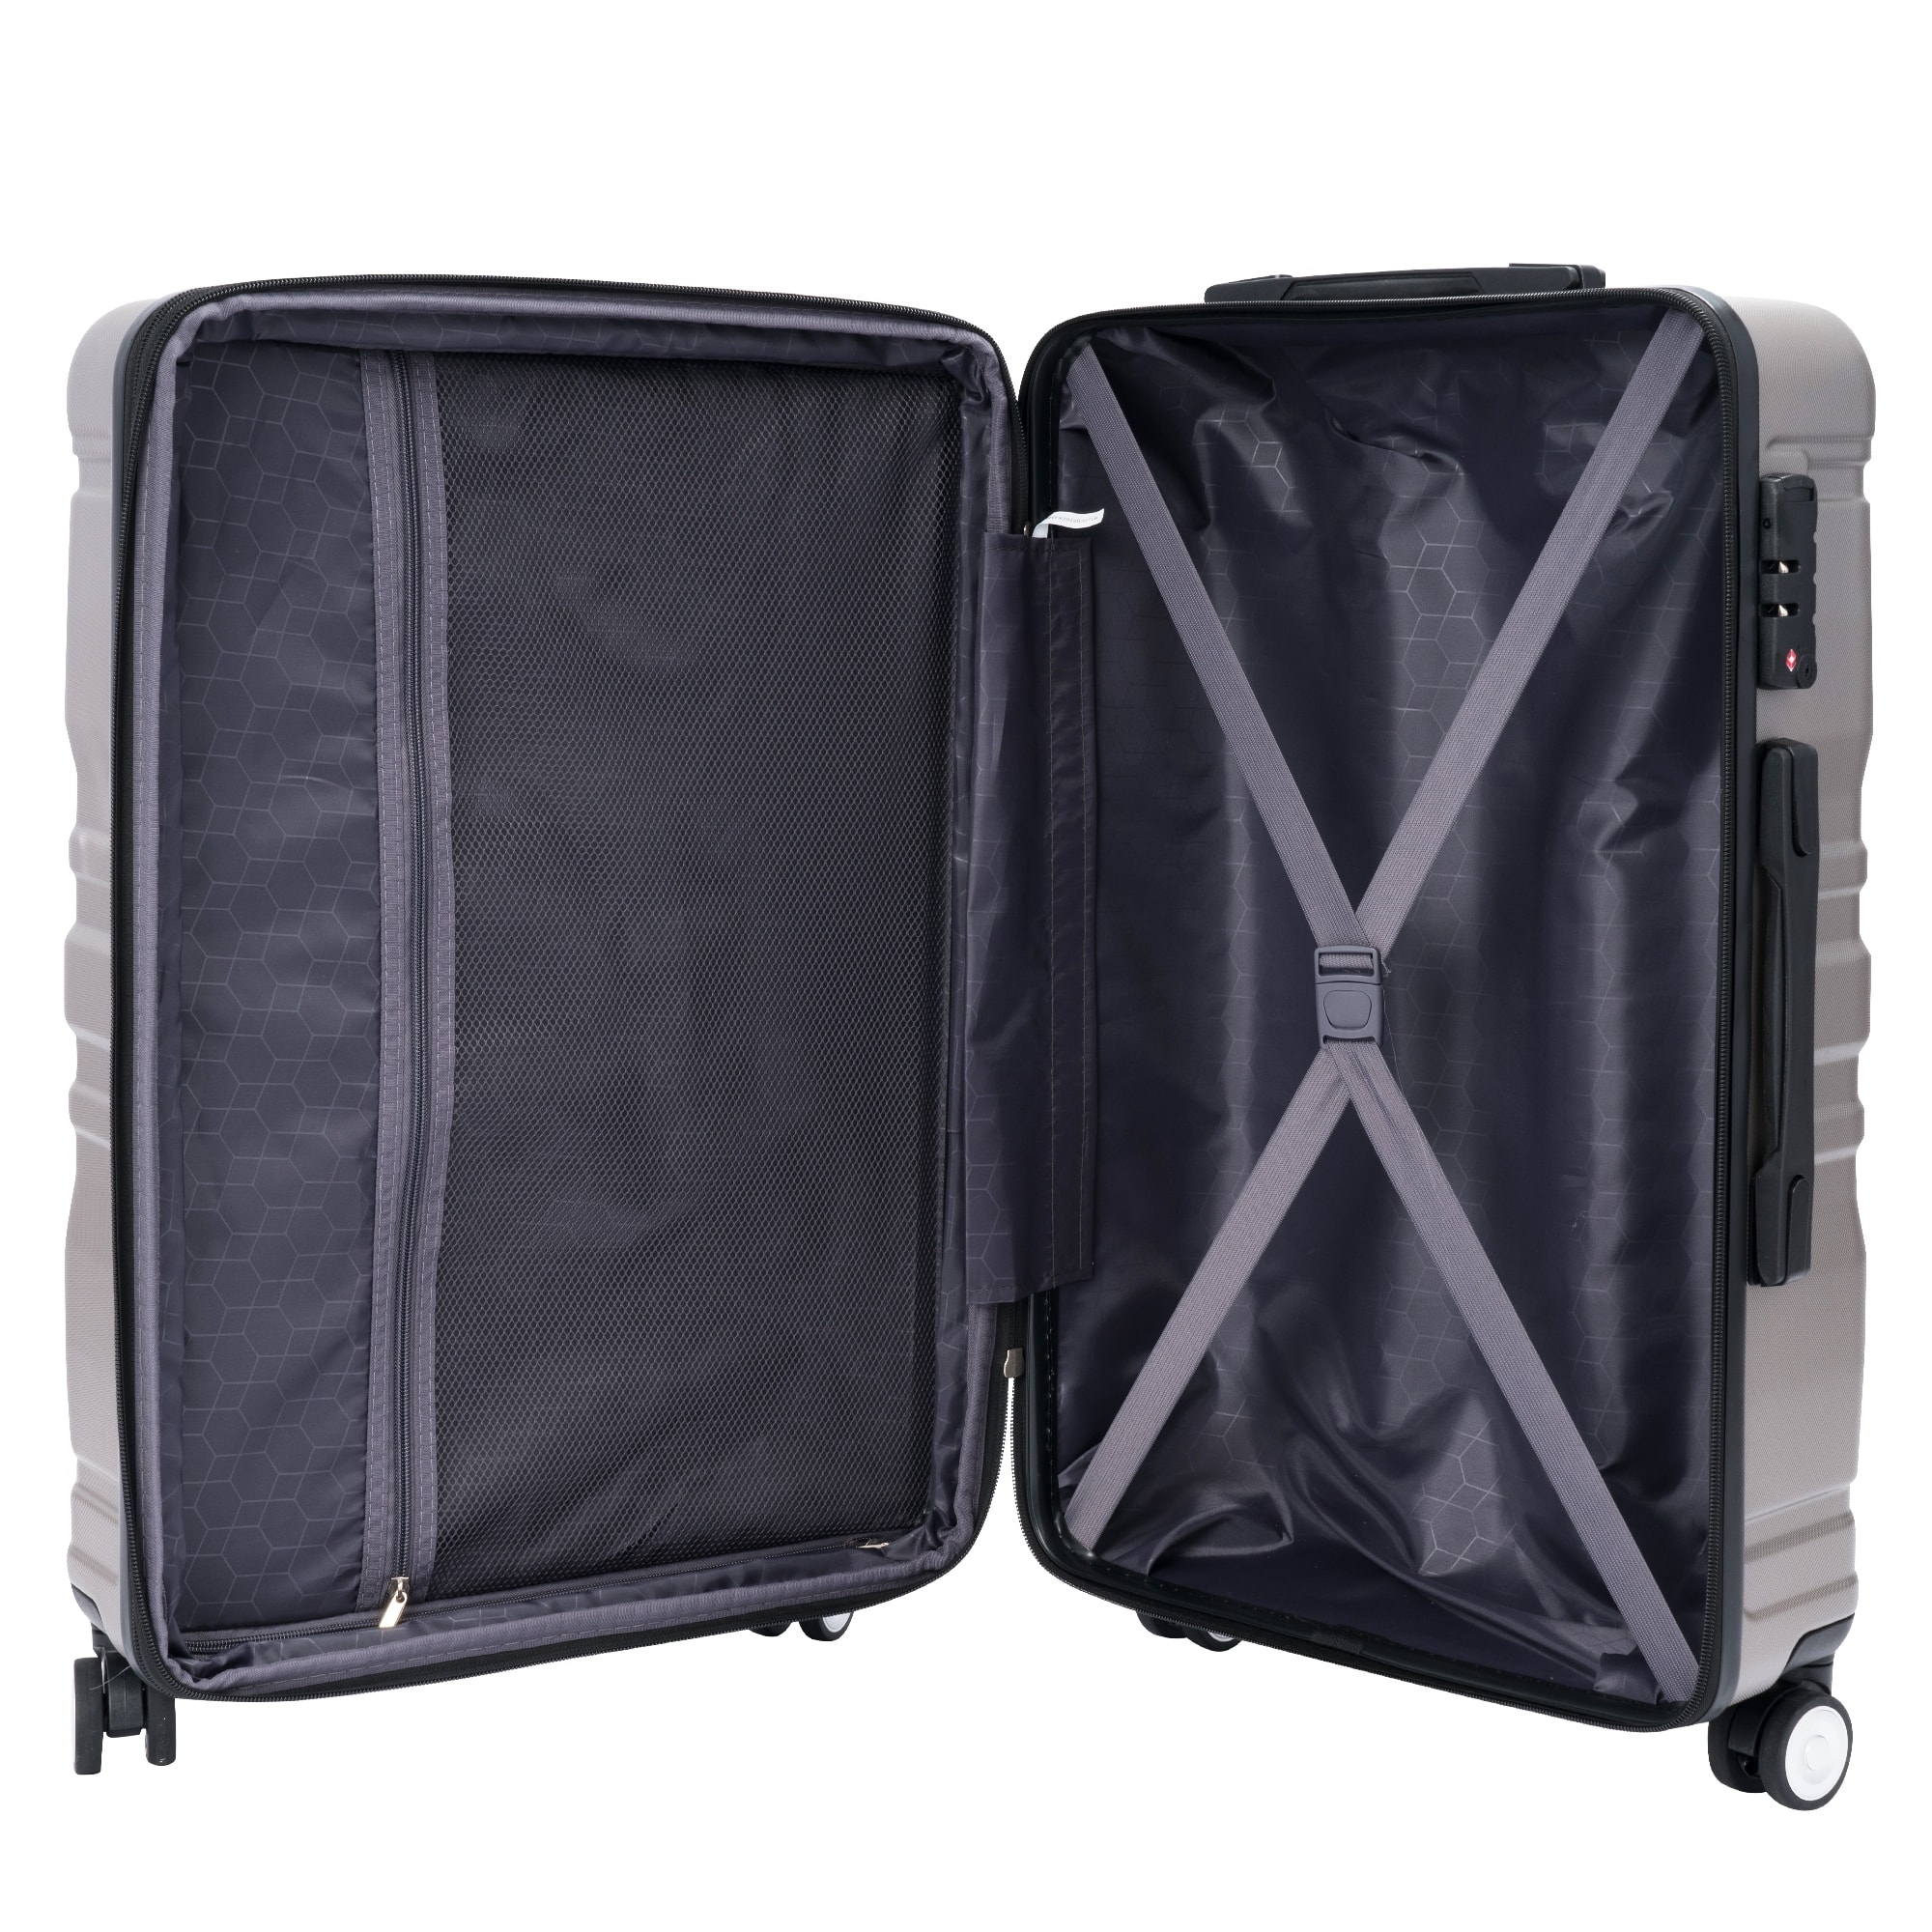 Blue 3 piece Sets Side HooksHard Case Luggage with TSA Lock Storage ...